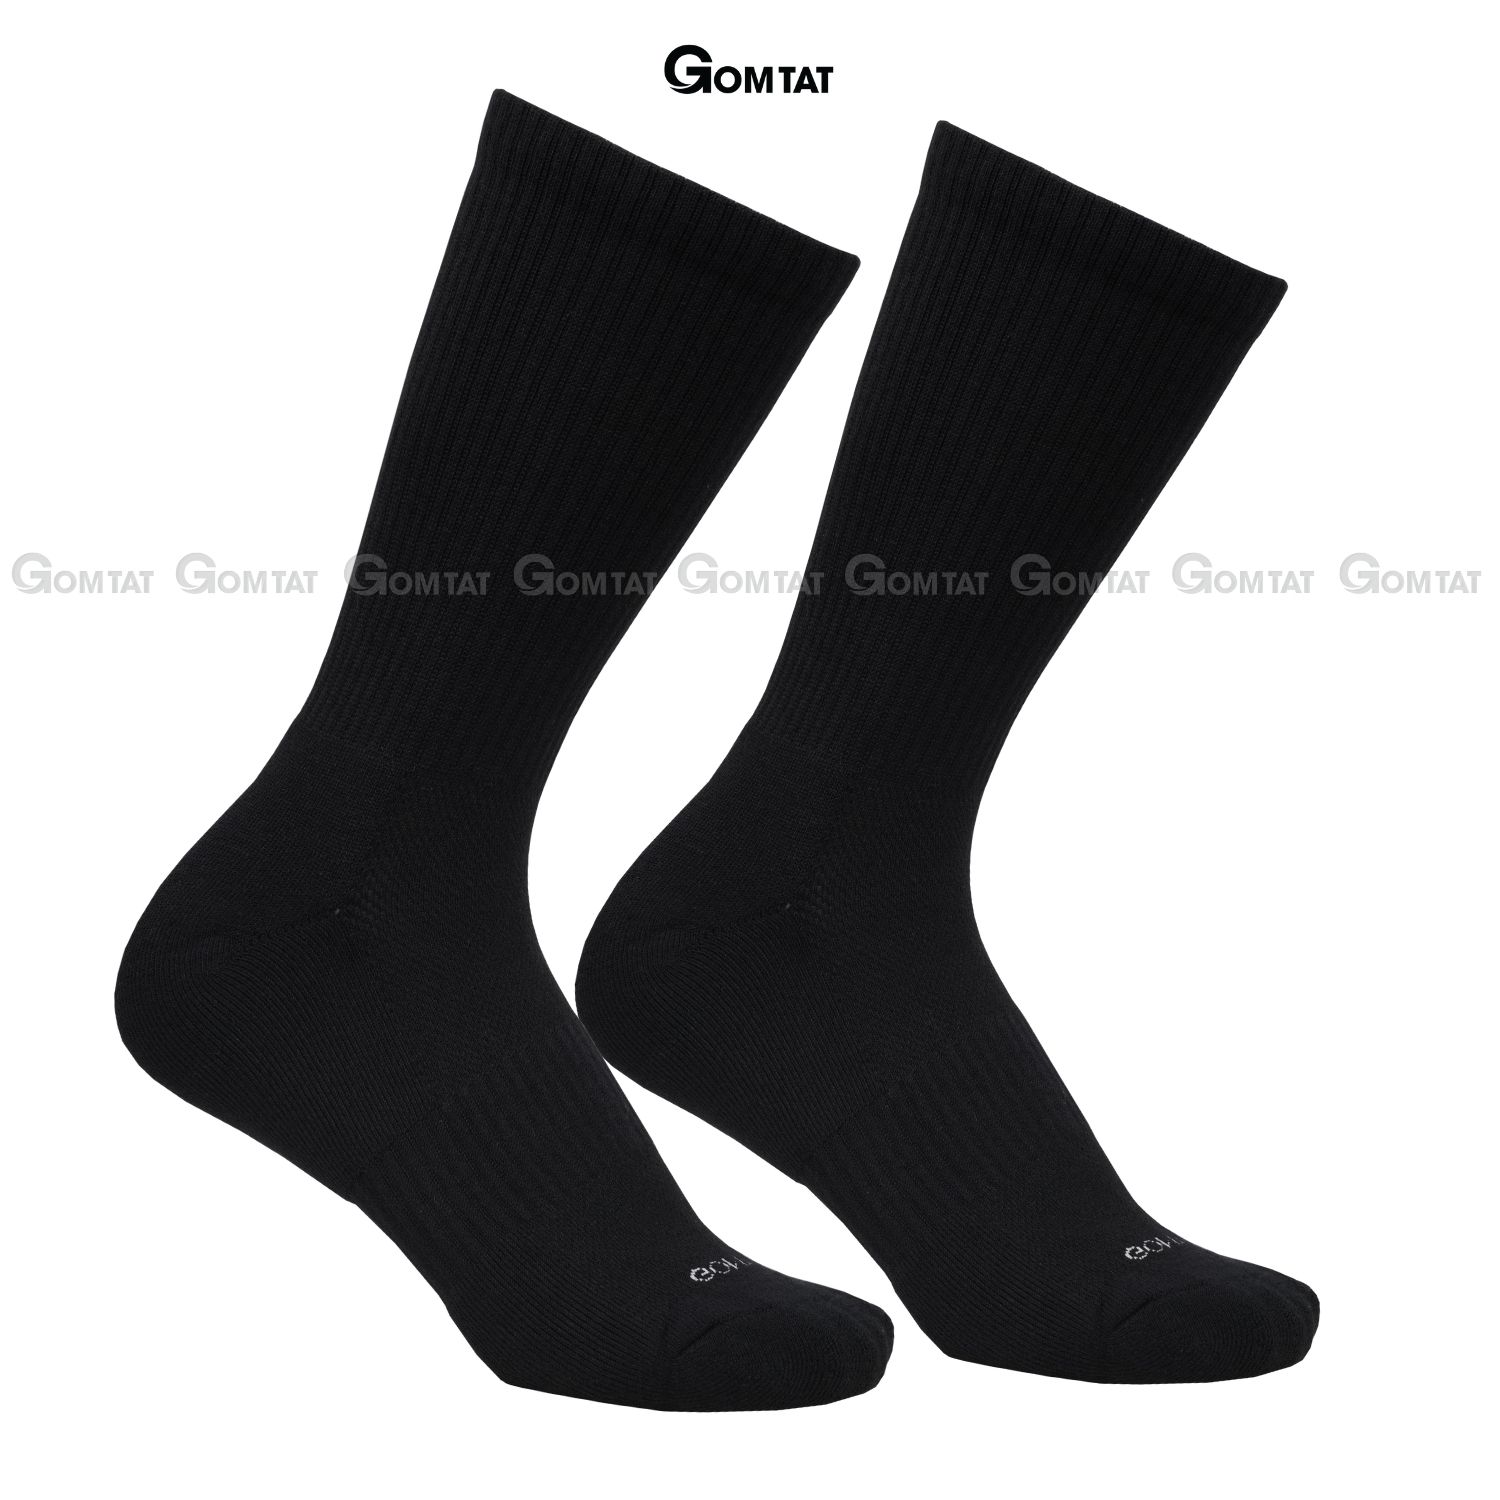 Combo 10 đôi tất nam nữ cao cổ GOMTAT, chất liệu cotton cao cấp, có đệm lót xù êm chân, giữ ấm - NGAN-STA-5009-CAO-CB10